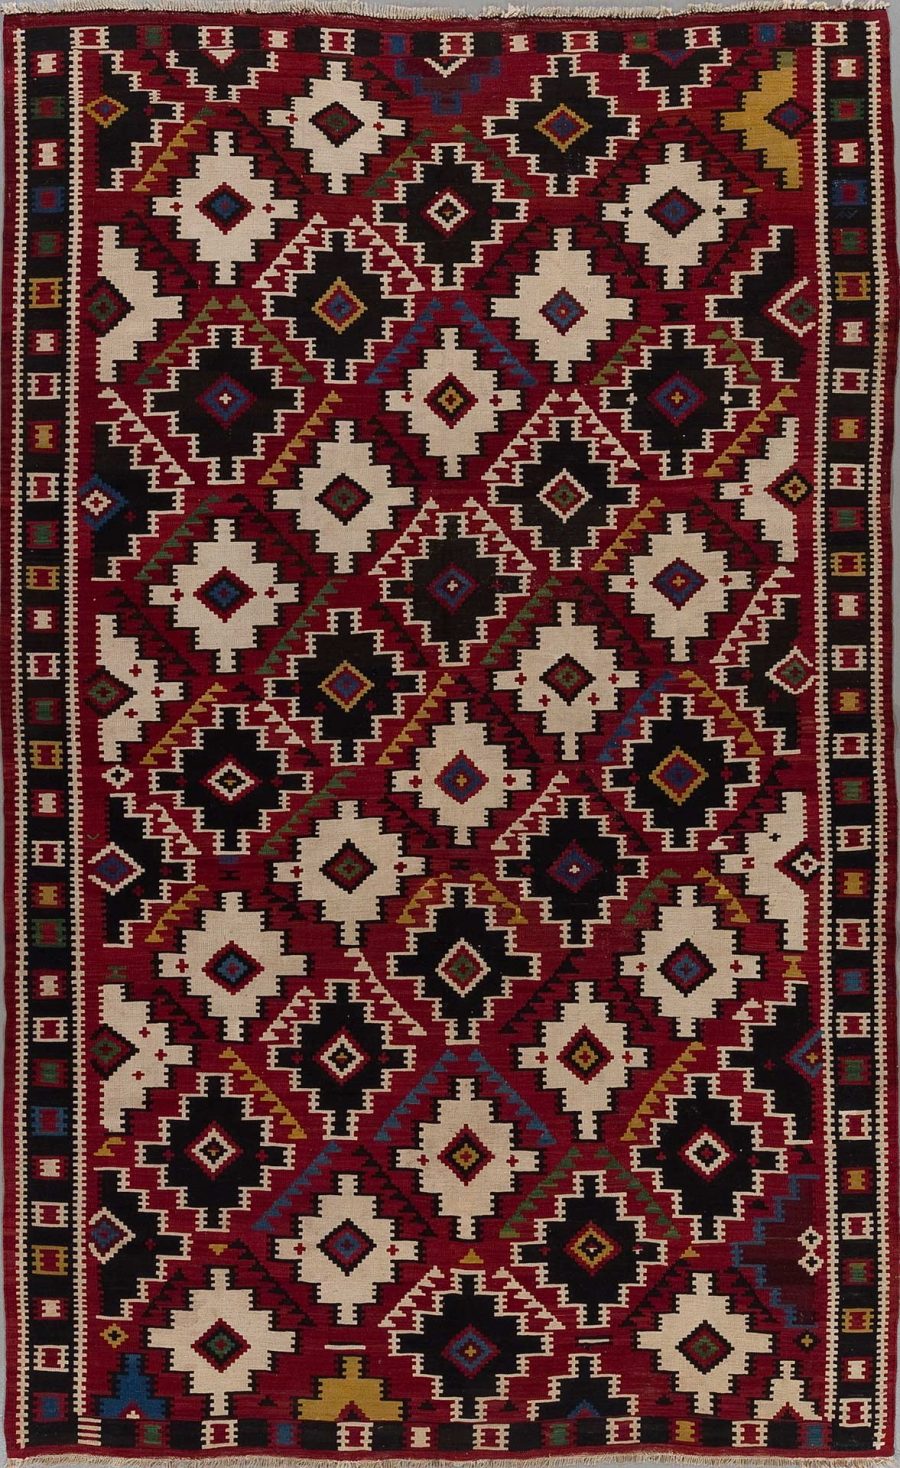 Traditioneller handgewebter Teppich mit komplexem geometrischem Muster in Rot-, Schwarz-, Weiß- und Blautönen.